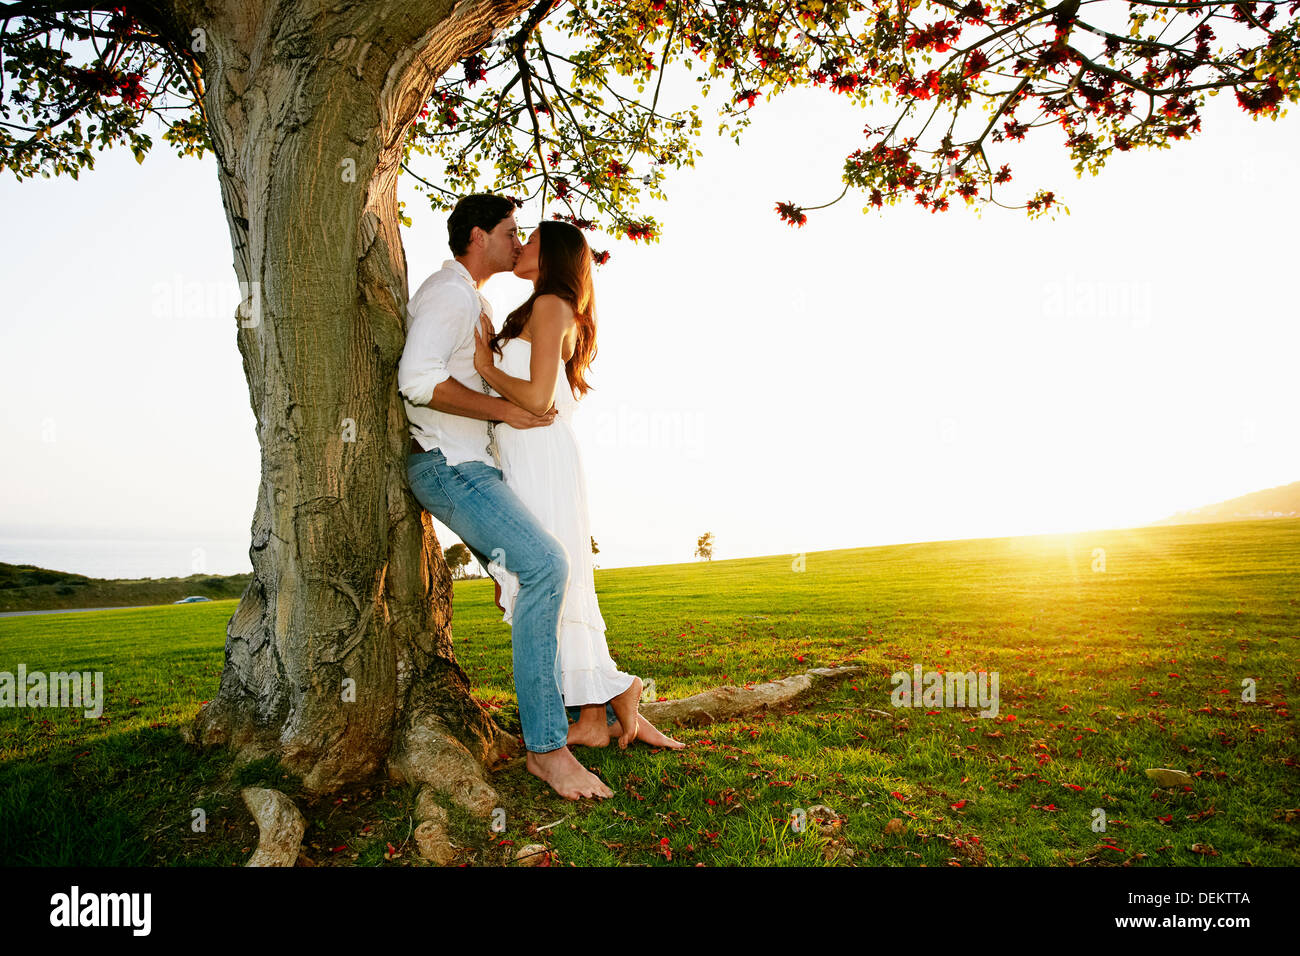 Giovane kissing mediante una struttura ad albero in posizione di parcheggio Foto Stock